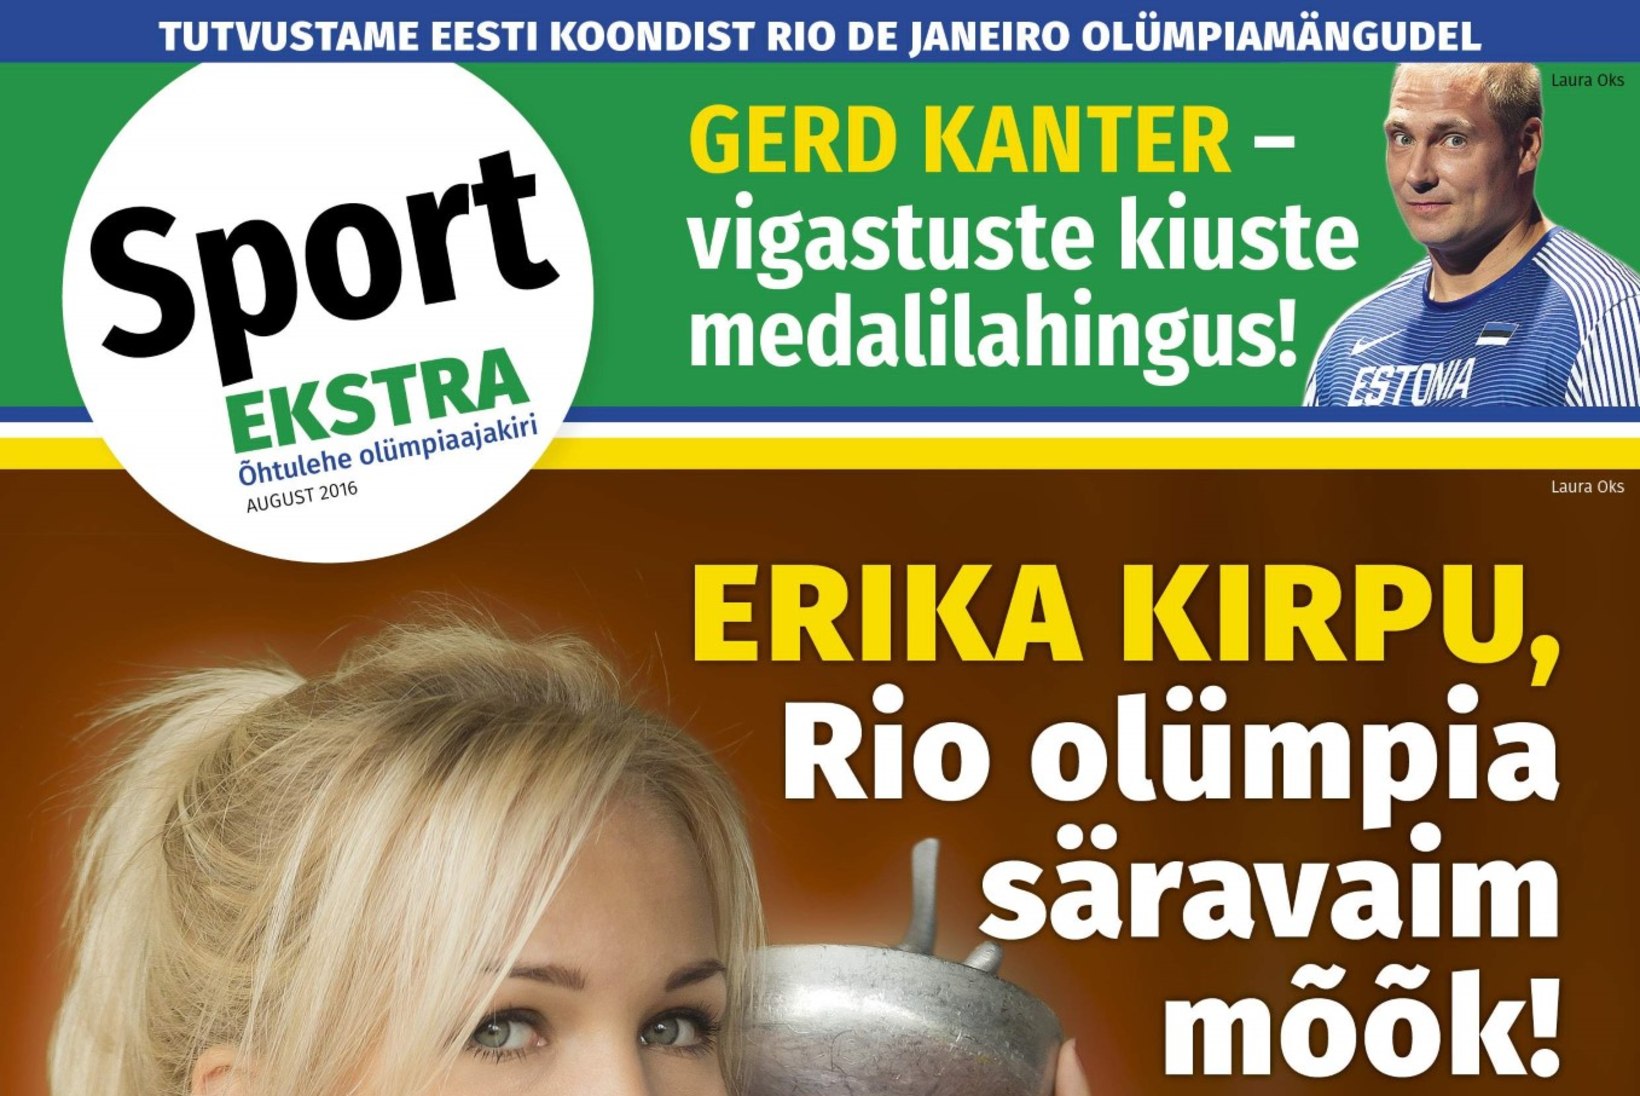 GALERII | Kauni vehkleja Erika Kirpu eksklusiivne fotosessioon ajakirjale "Sport-Ekstra"!